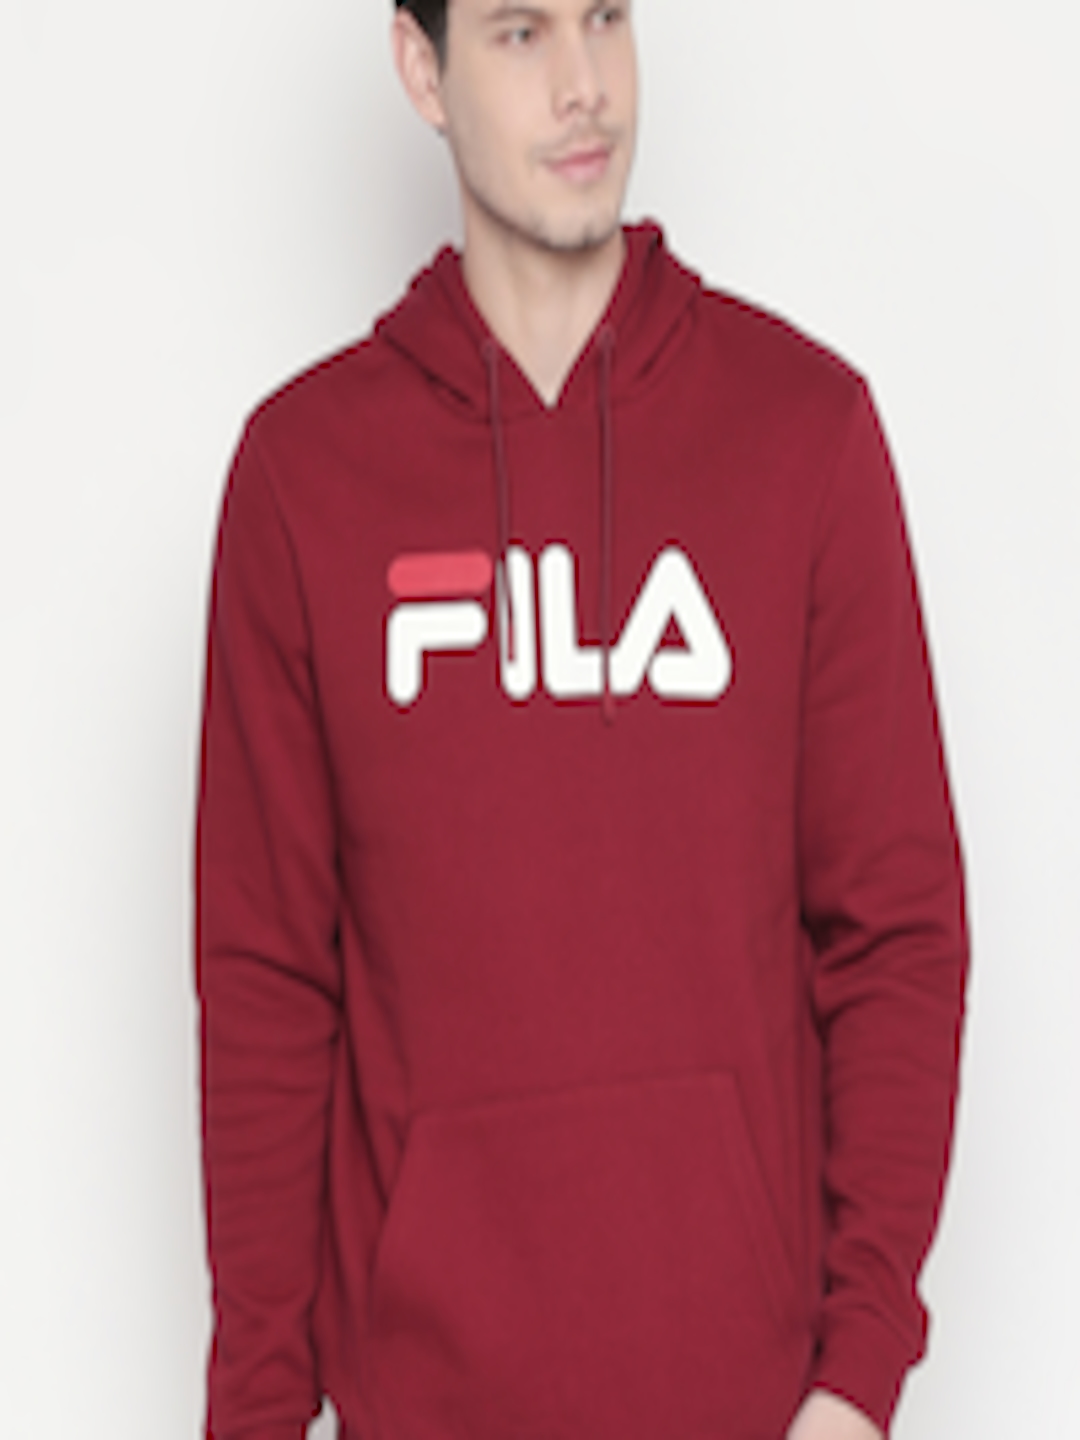 Buy FILA Men Red Printed Hooded Sweatshirt - Sweatshirts for Men ...